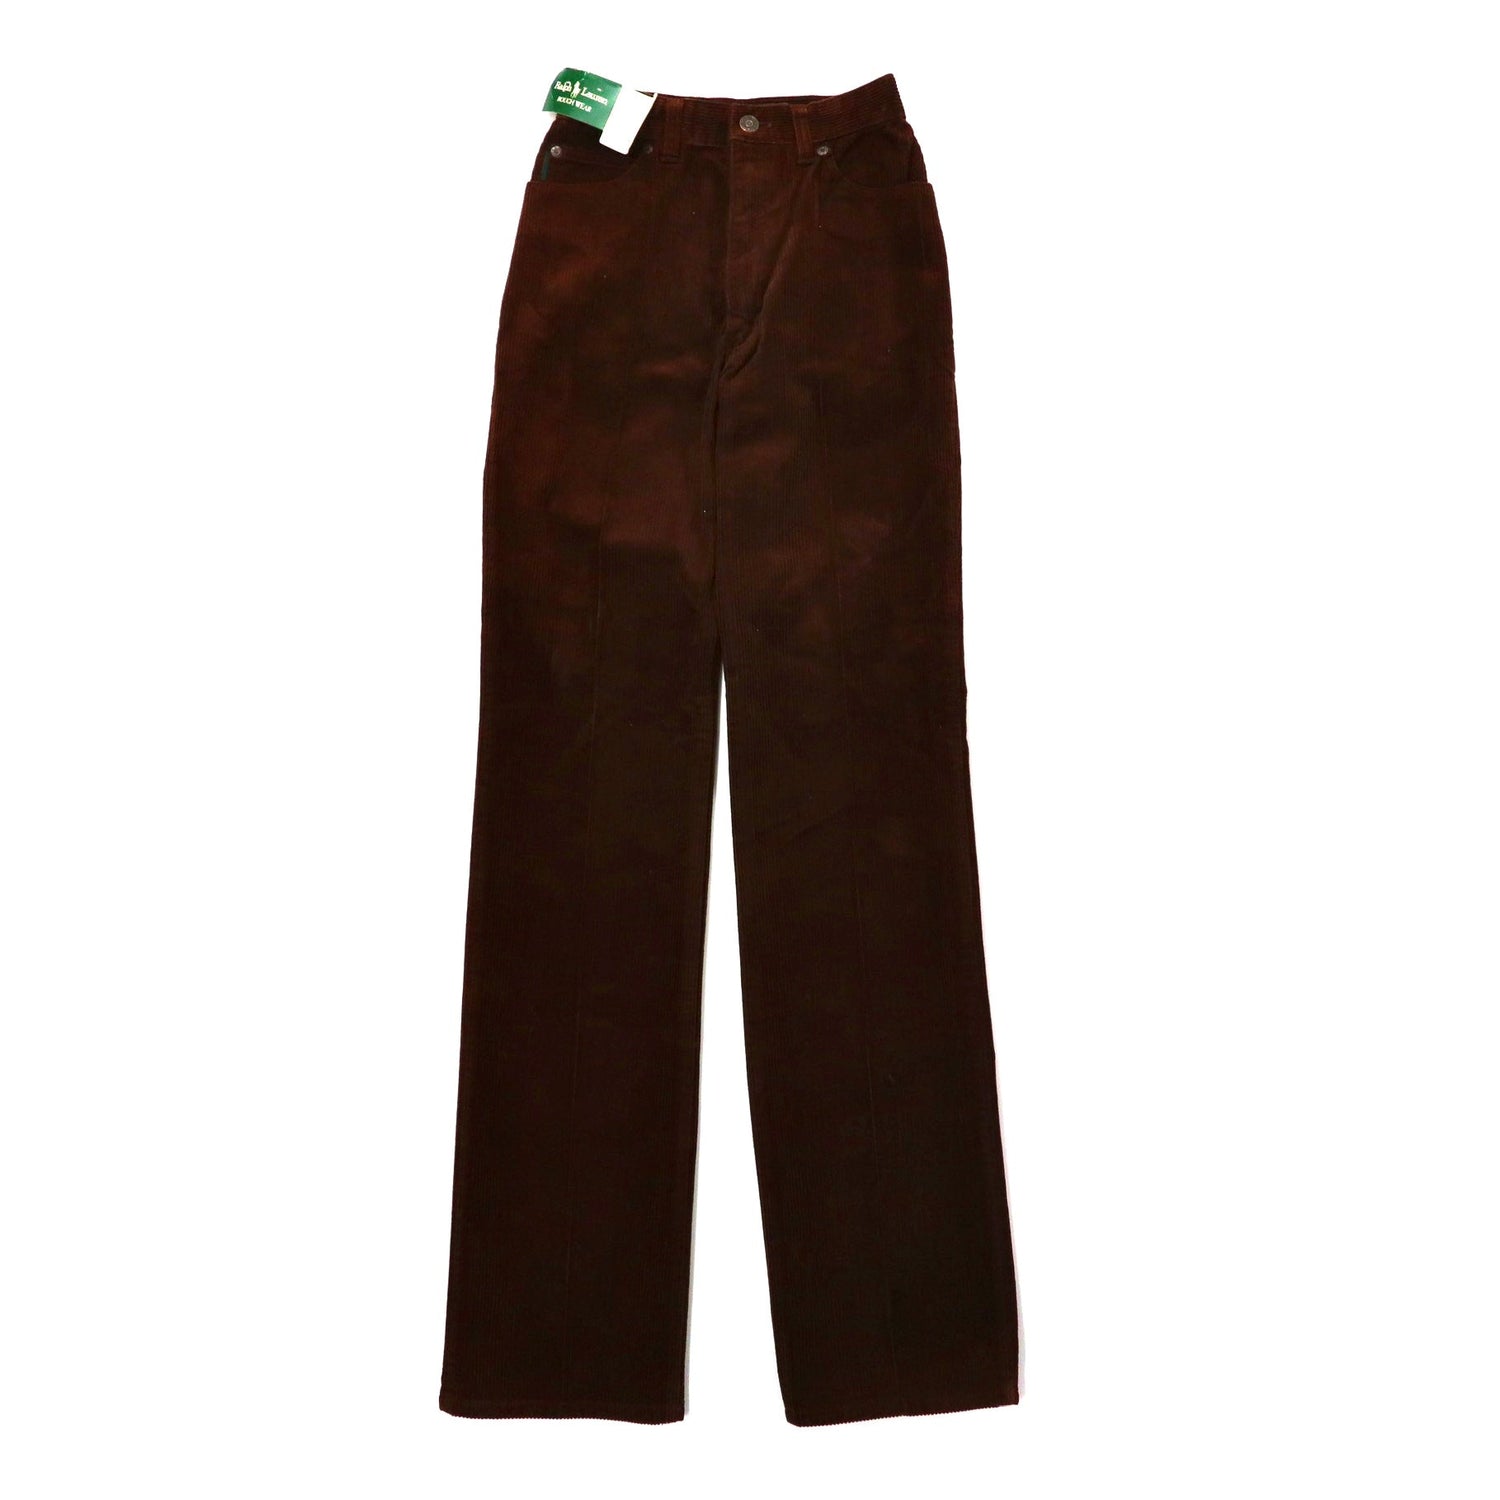 RALPH LAUREN Corduroy Pants 27 Brown Cotton Leather Patch